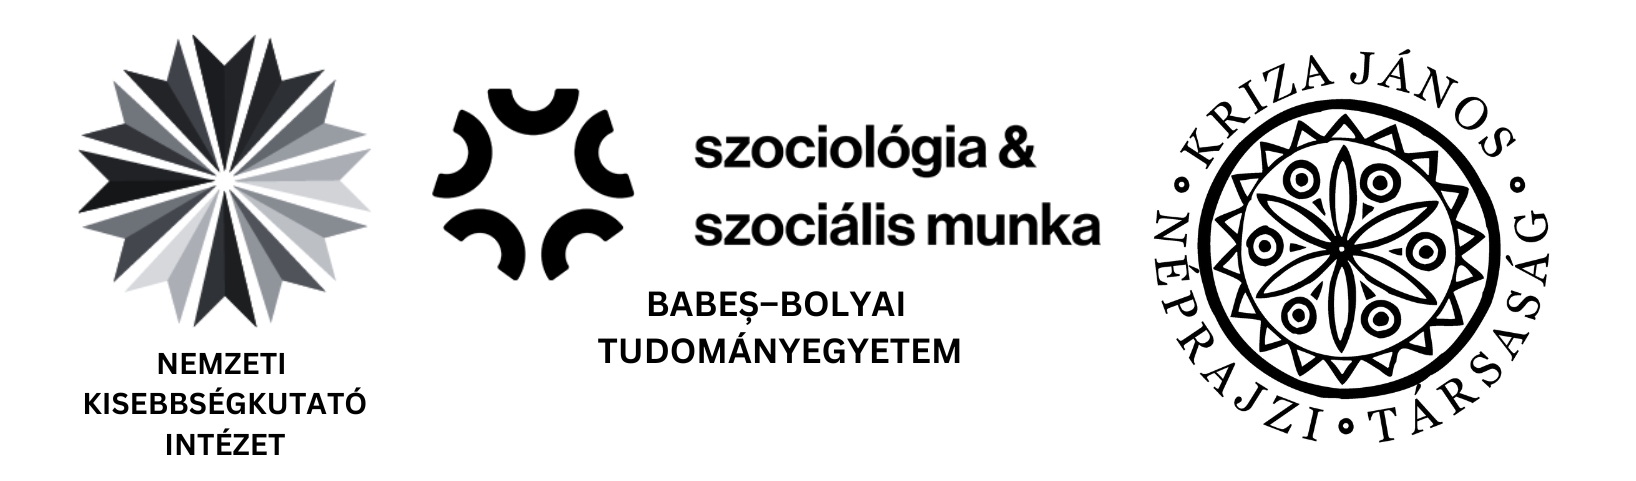 Logok tarsszervezők